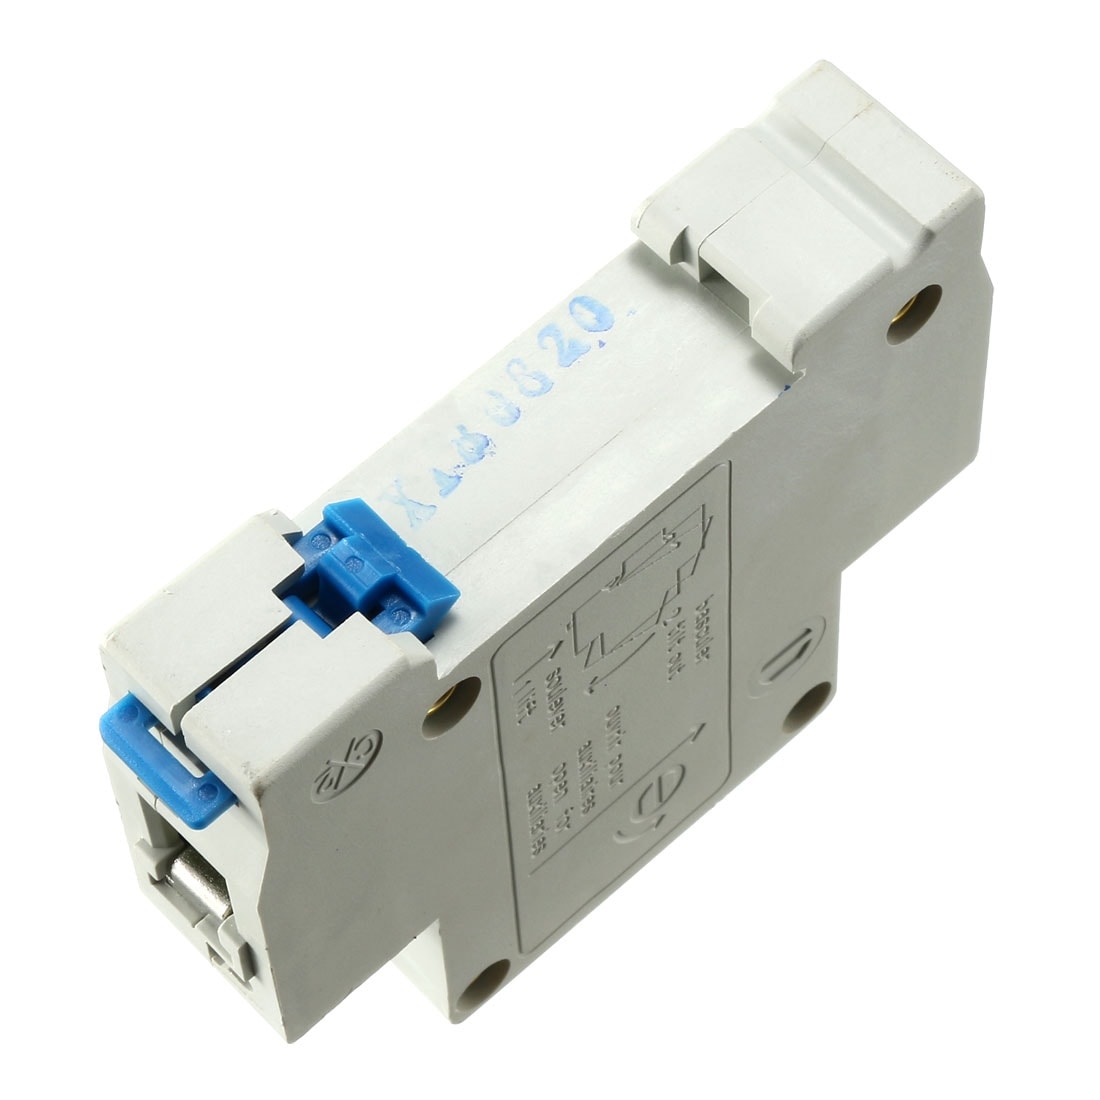 DZ47-63 1 Pole 20A 230/400V C20 Details about   Miniature Circuit Breaker 2pcs D Curve 